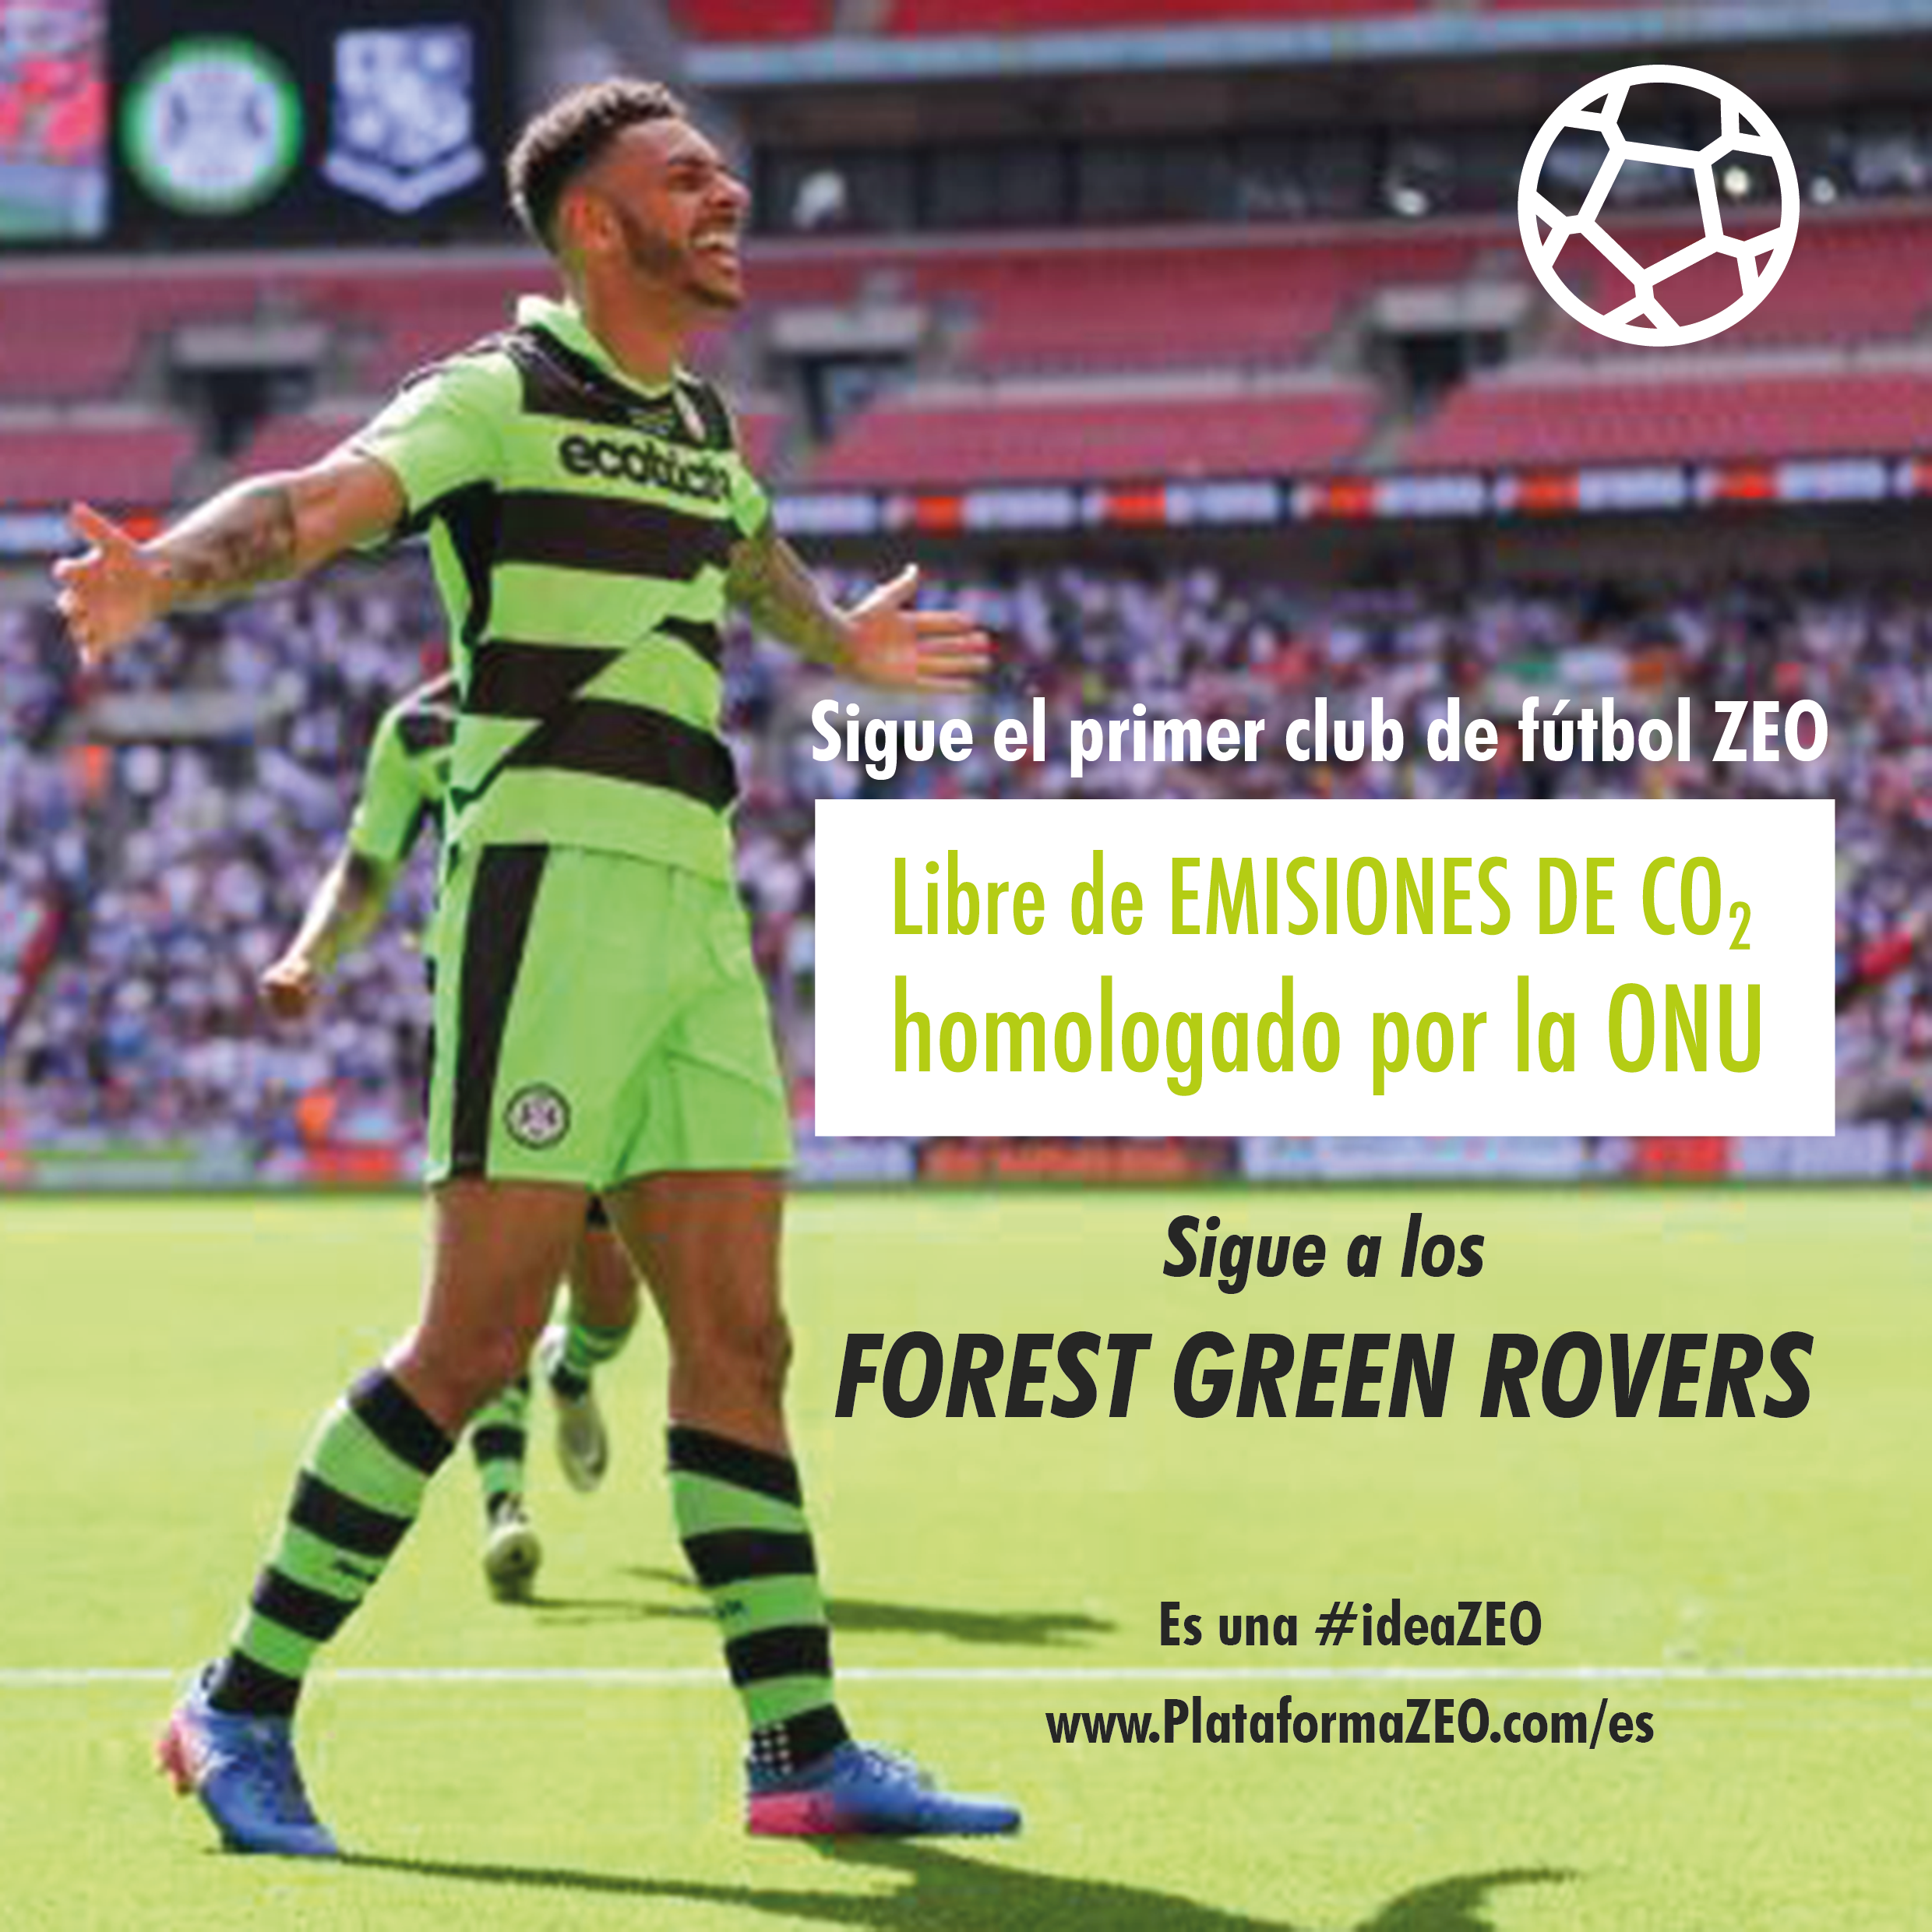 Los Forest Green Rovers son el primer equipo libre de emisiones